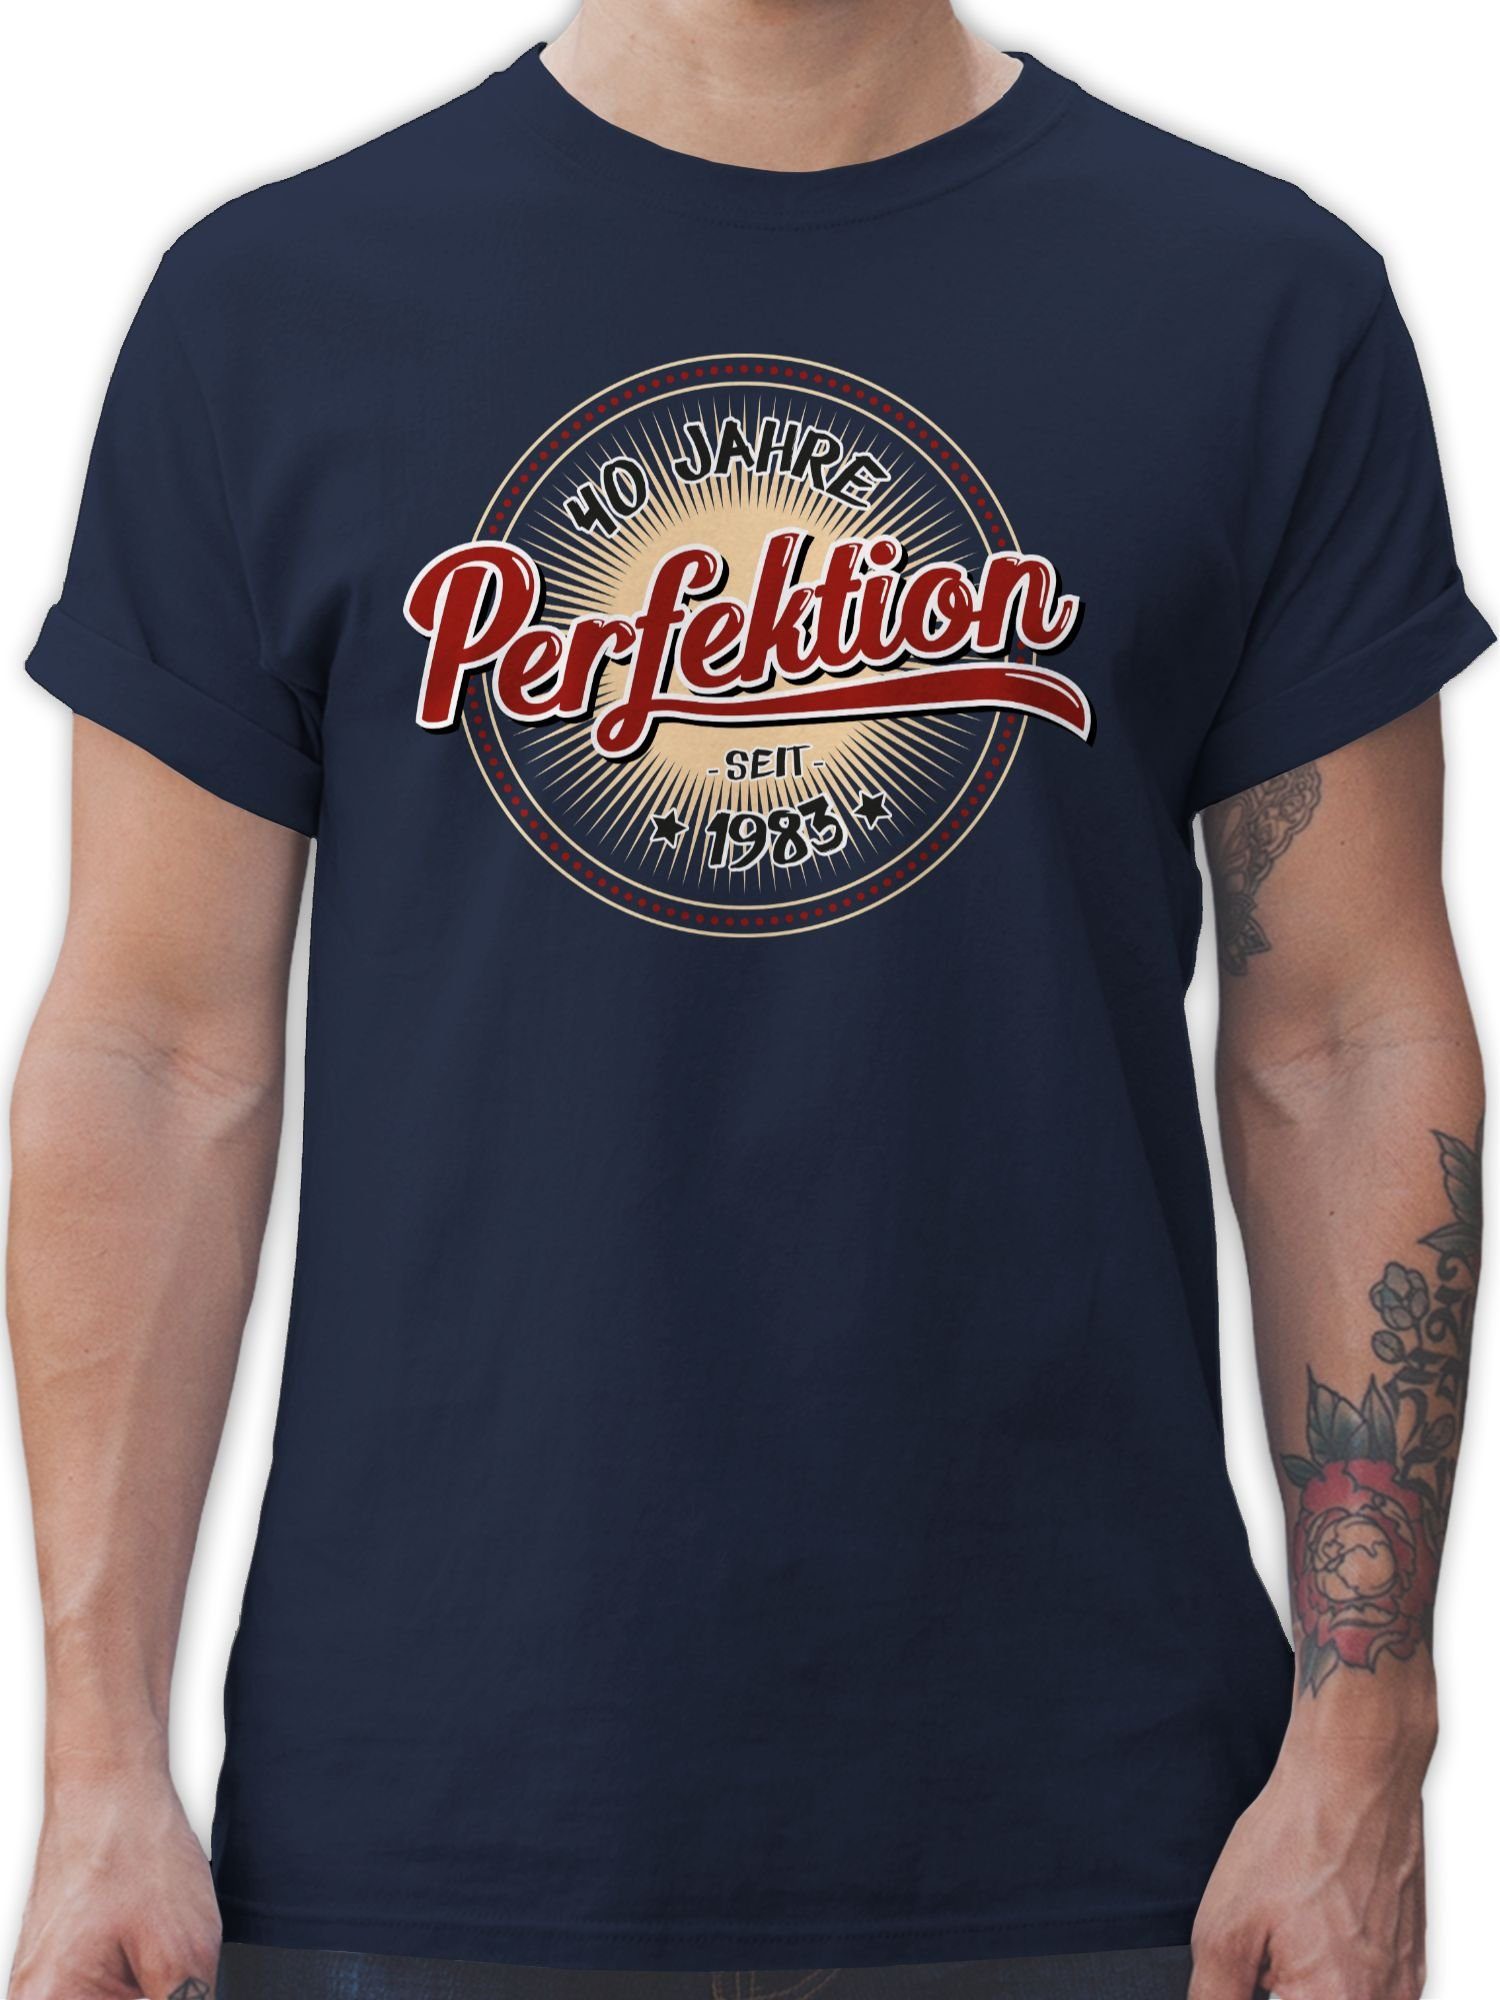 Shirtracer T-Shirt Vierzig Jahre Perfektion seit 1983 - 40. Geburtstag - Herren Premium T-Shirt tshirt männer vintage - t shirt 40 jahre mann 3 Navy Blau